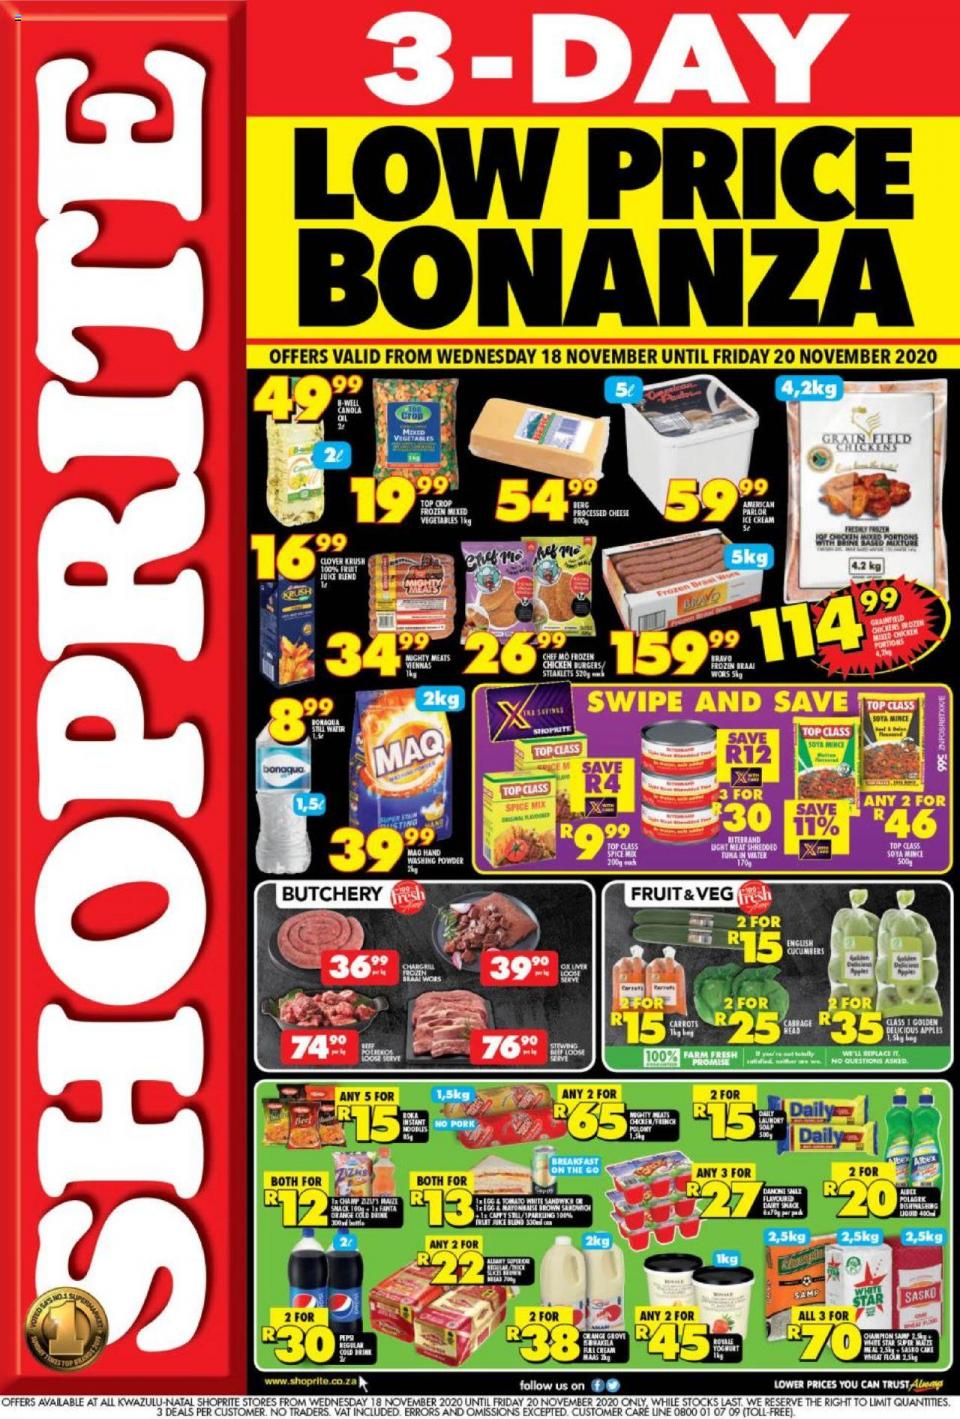 Shoprite Specials 3-Day Low Price Bonanza 18 November 2020